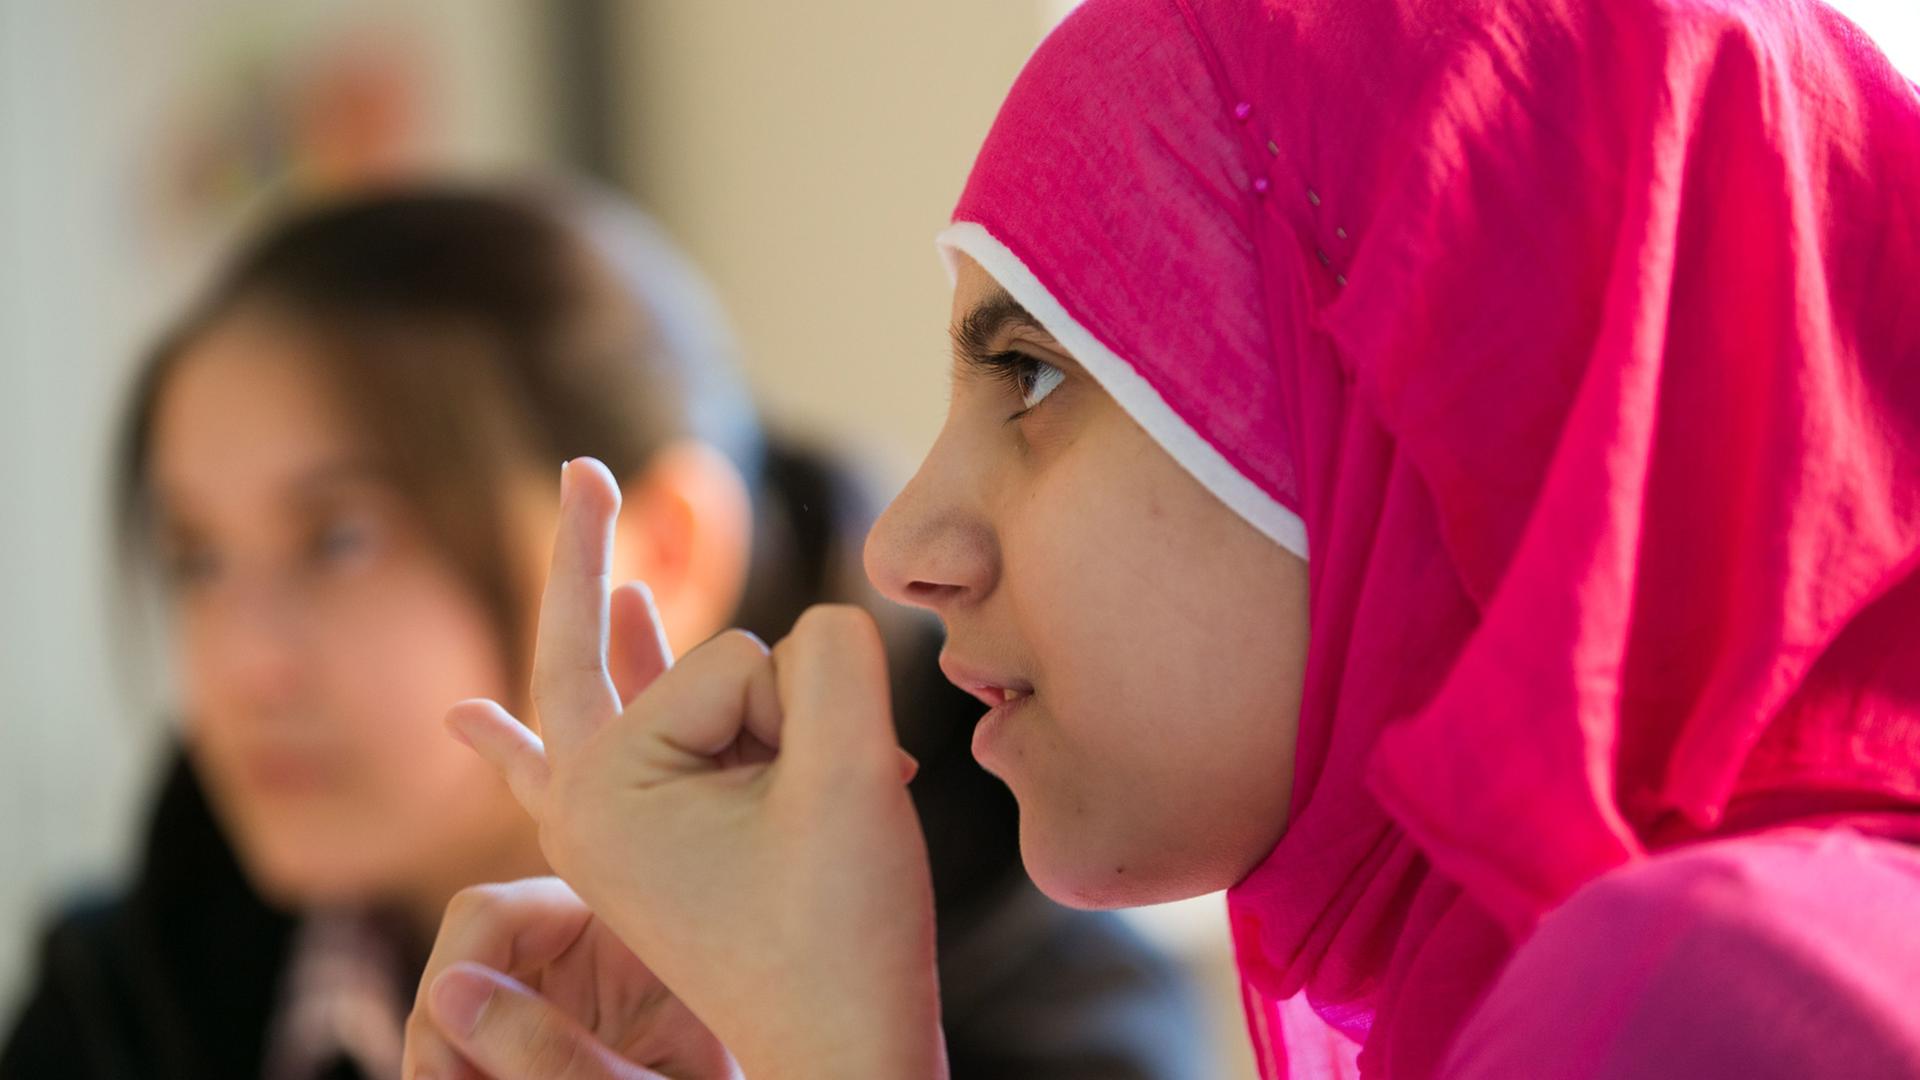 Ein syrisches Flüchtlingsmädchen während des Schulunterrichts mit rosafarbenen Kopftuch.